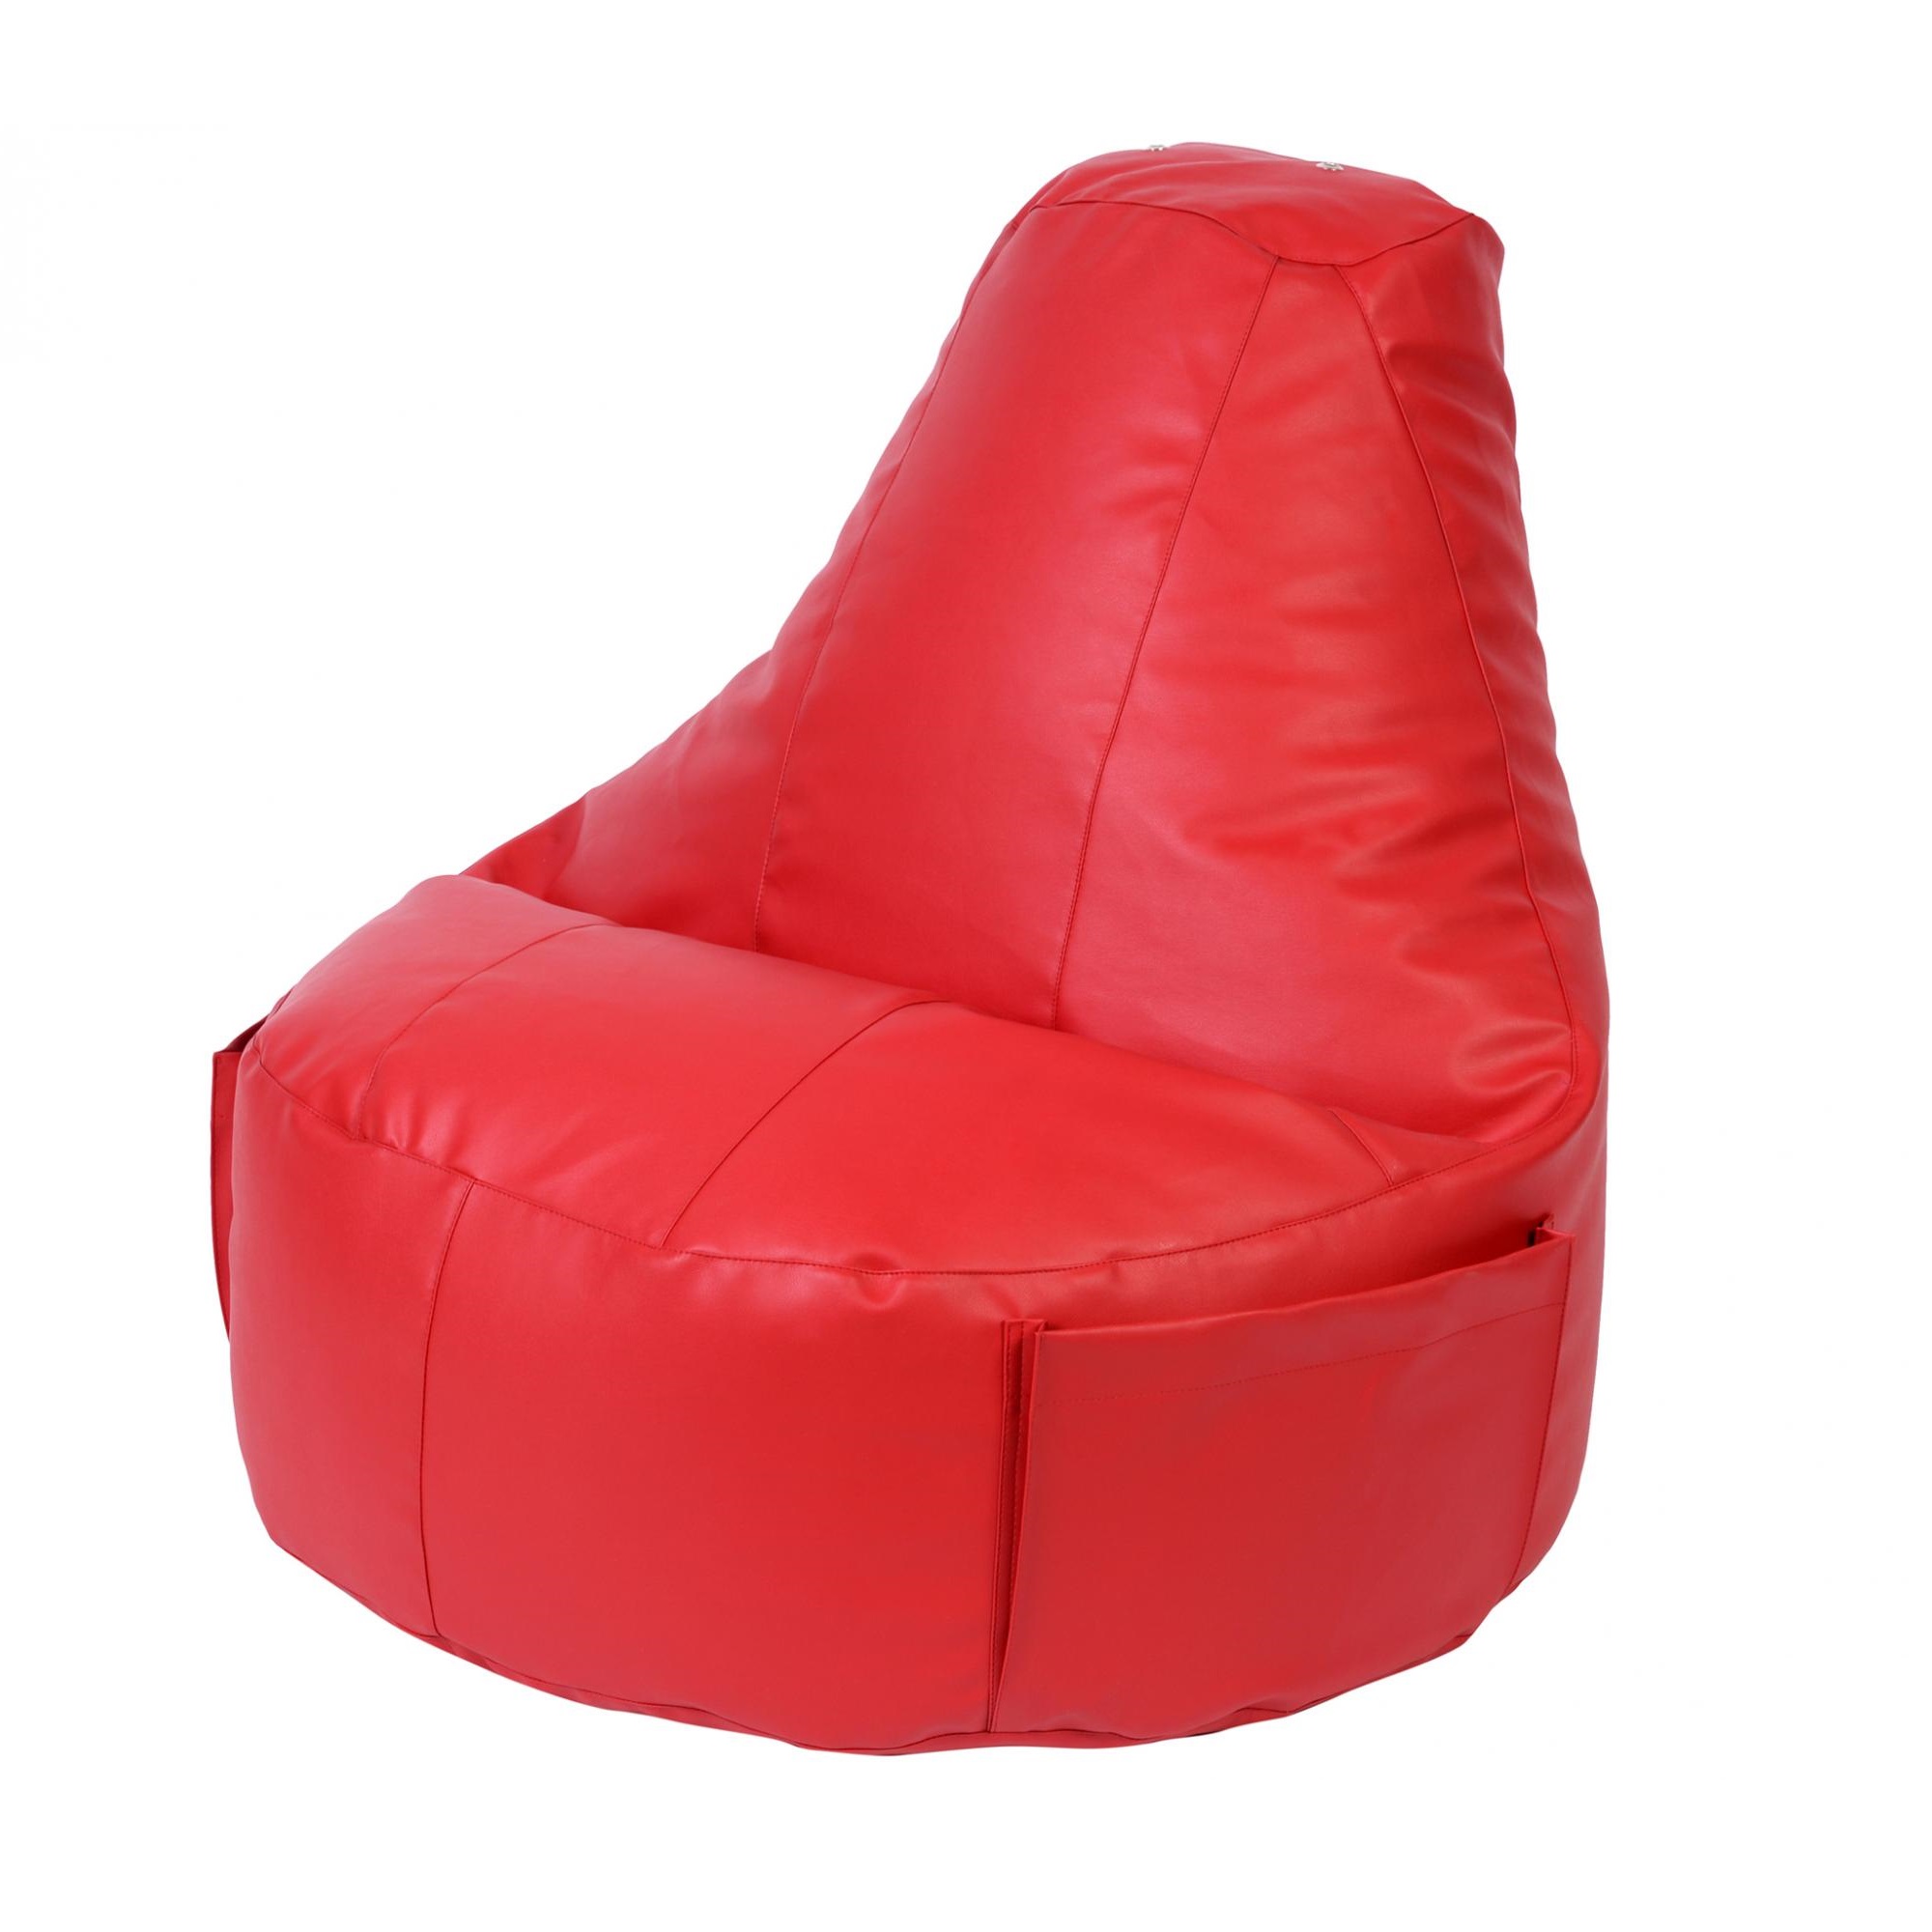 Кресло Dreambag Comfort красное экокожа 150x90 см кресло dreambag comfort чёрный экокожа 150x90 см